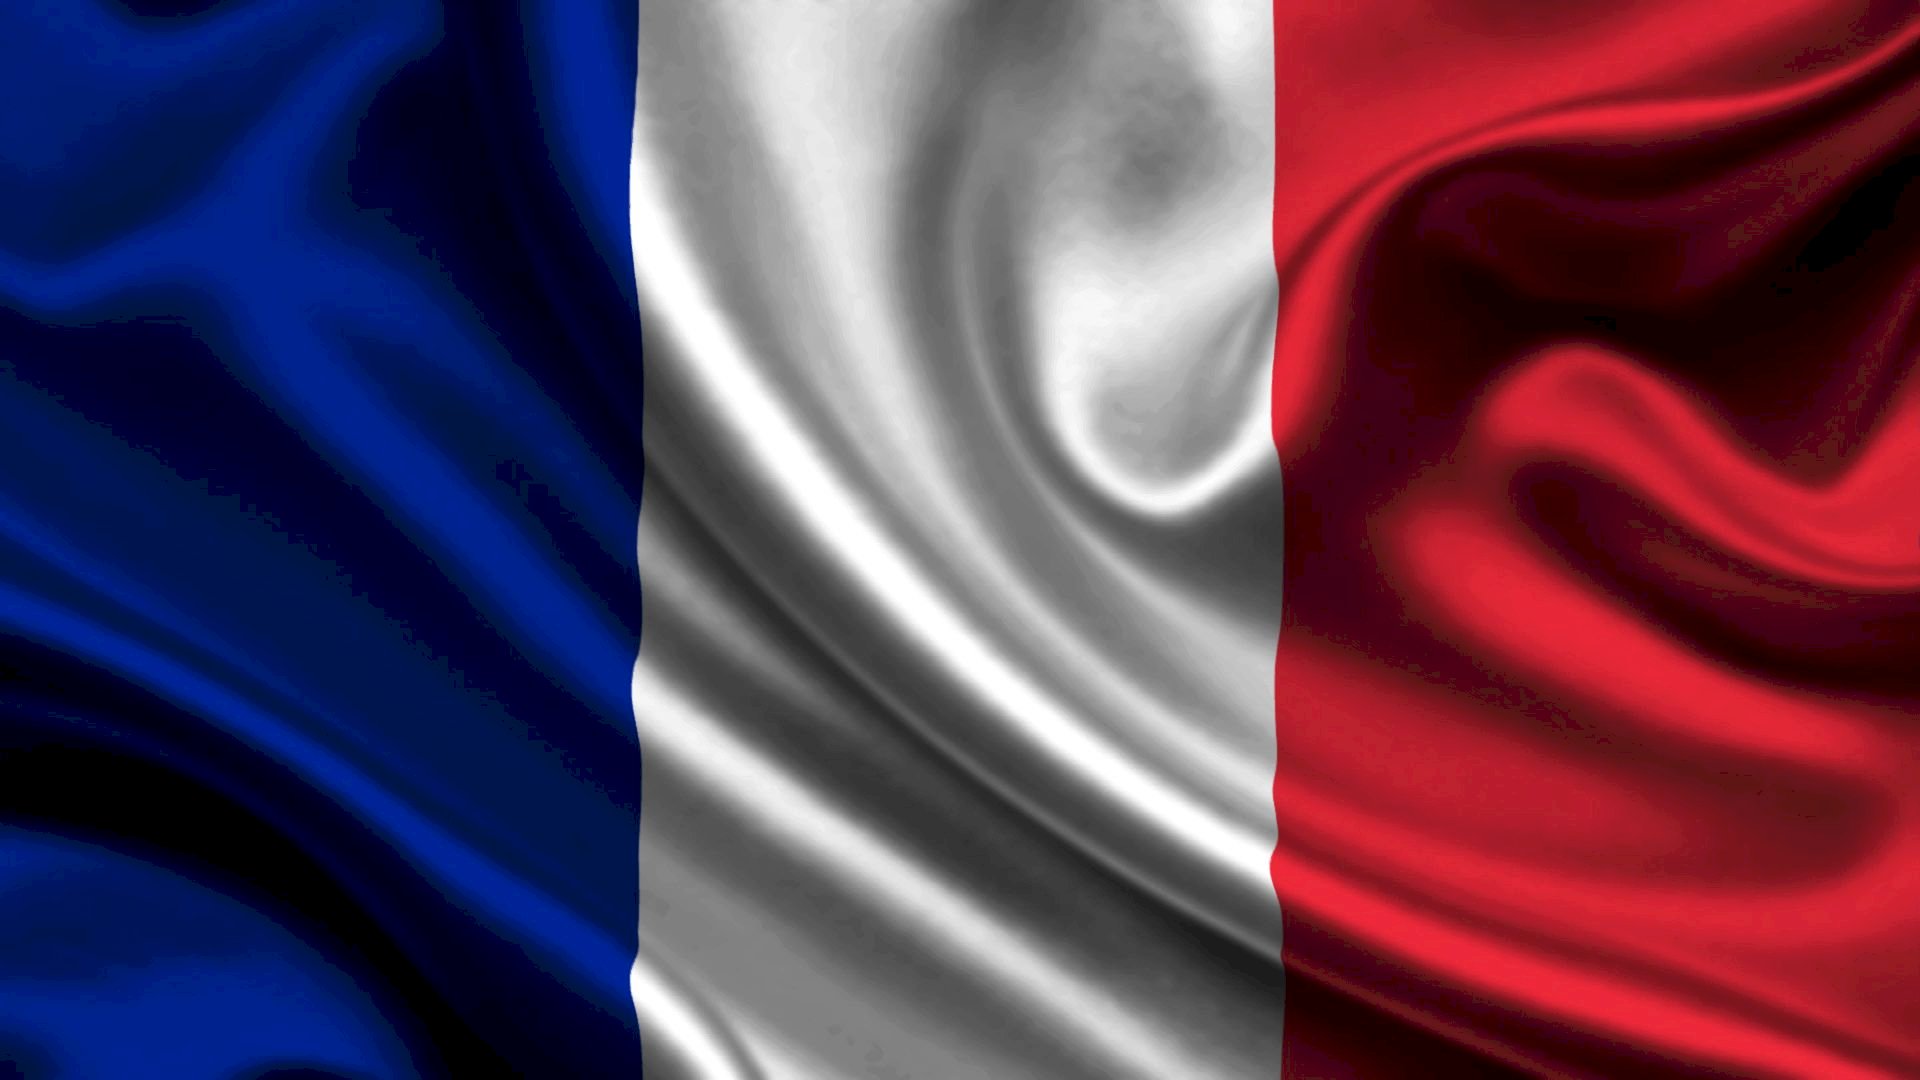 Làm nền cho ảnh đại diện của bạn trở nên thu hút hơn với hình nền cờ Pháp đẹp nhất của chúng tôi. Khám phá và tải xuống ngay để trở thành người sở hữu hình nền độc đáo và ấn tượng nhất!